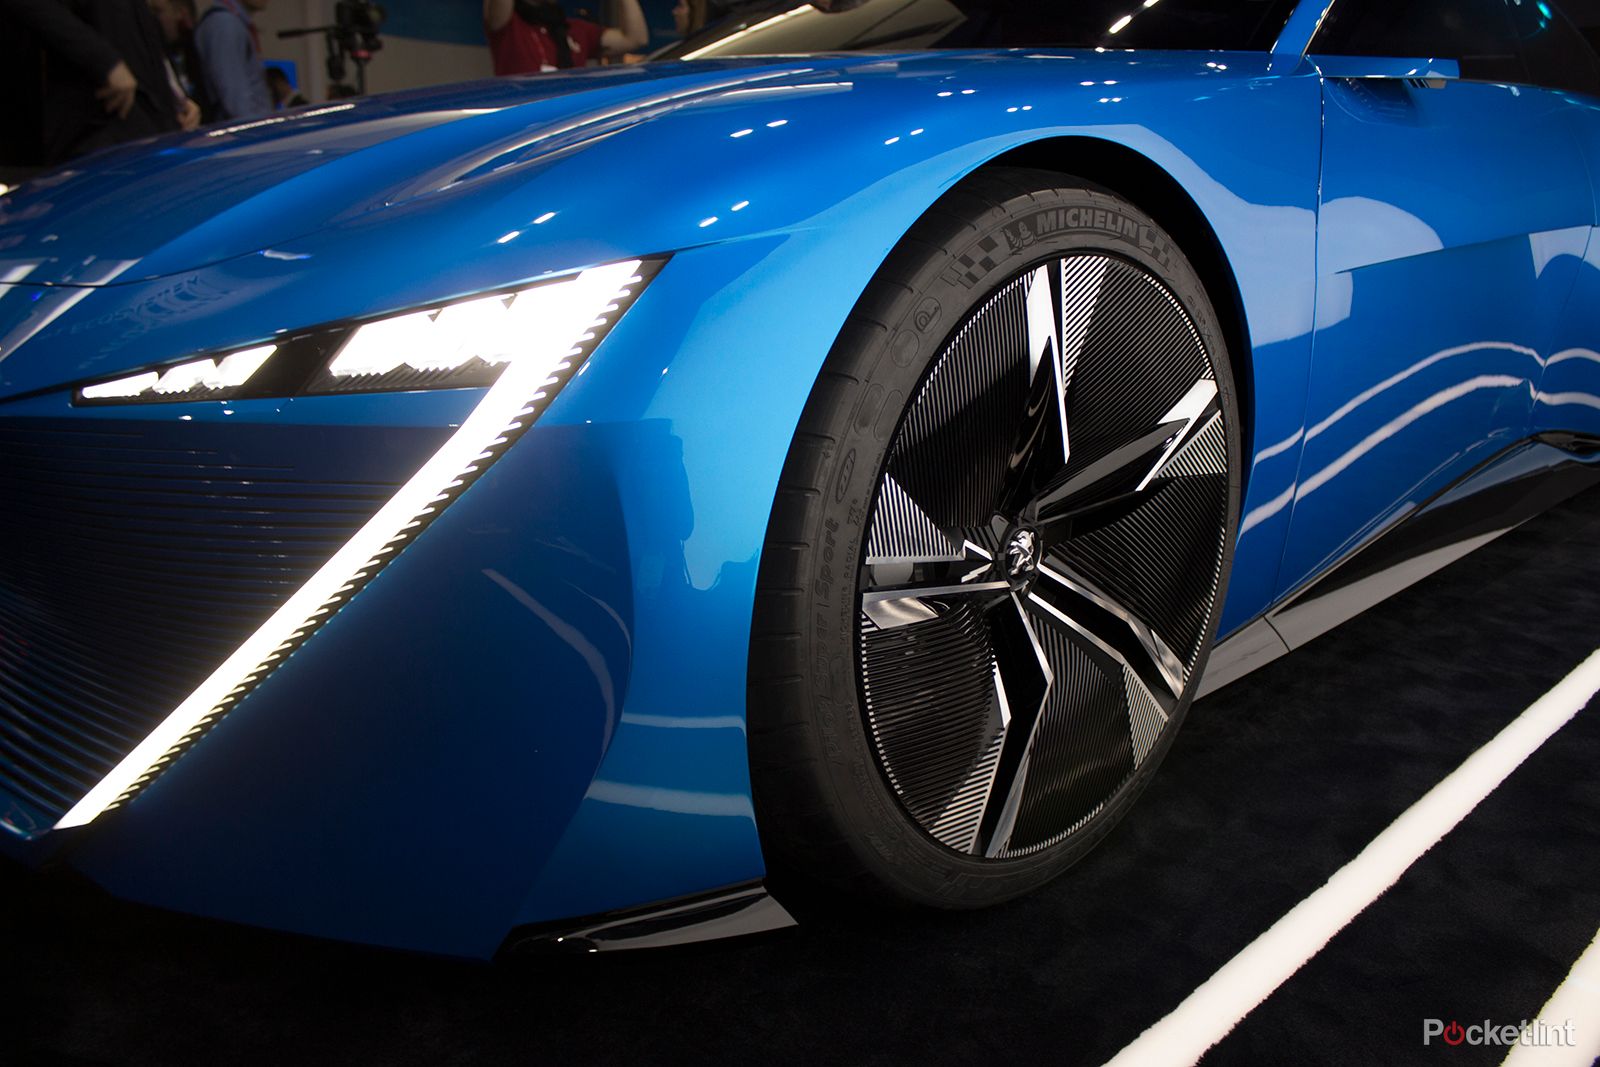 stunning instinct concept car shows peugeot s vision of an autonomous driving future image 4